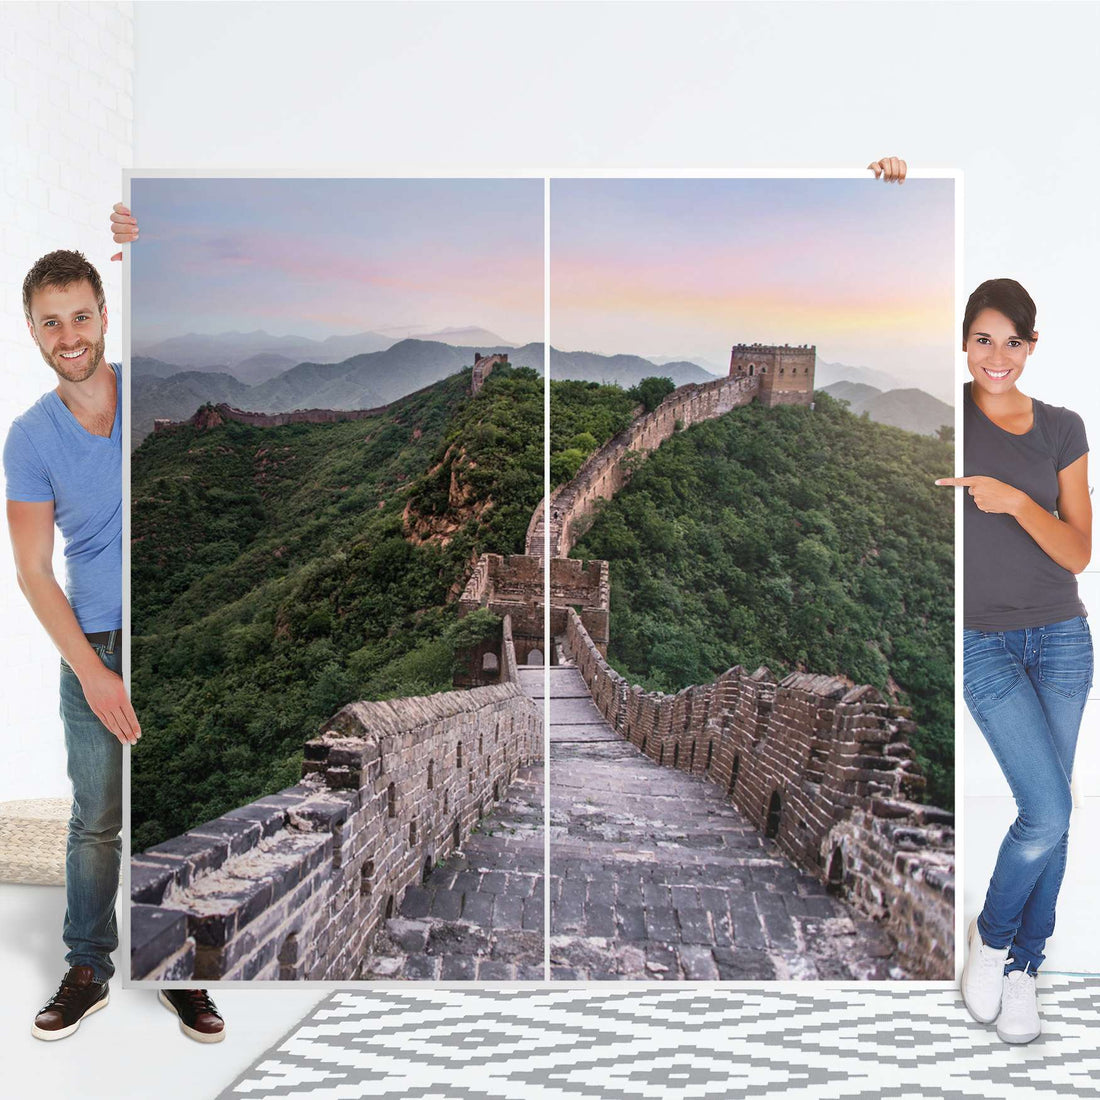 Möbel Klebefolie The Great Wall - IKEA Pax Schrank 201 cm Höhe - Schiebetür - Folie